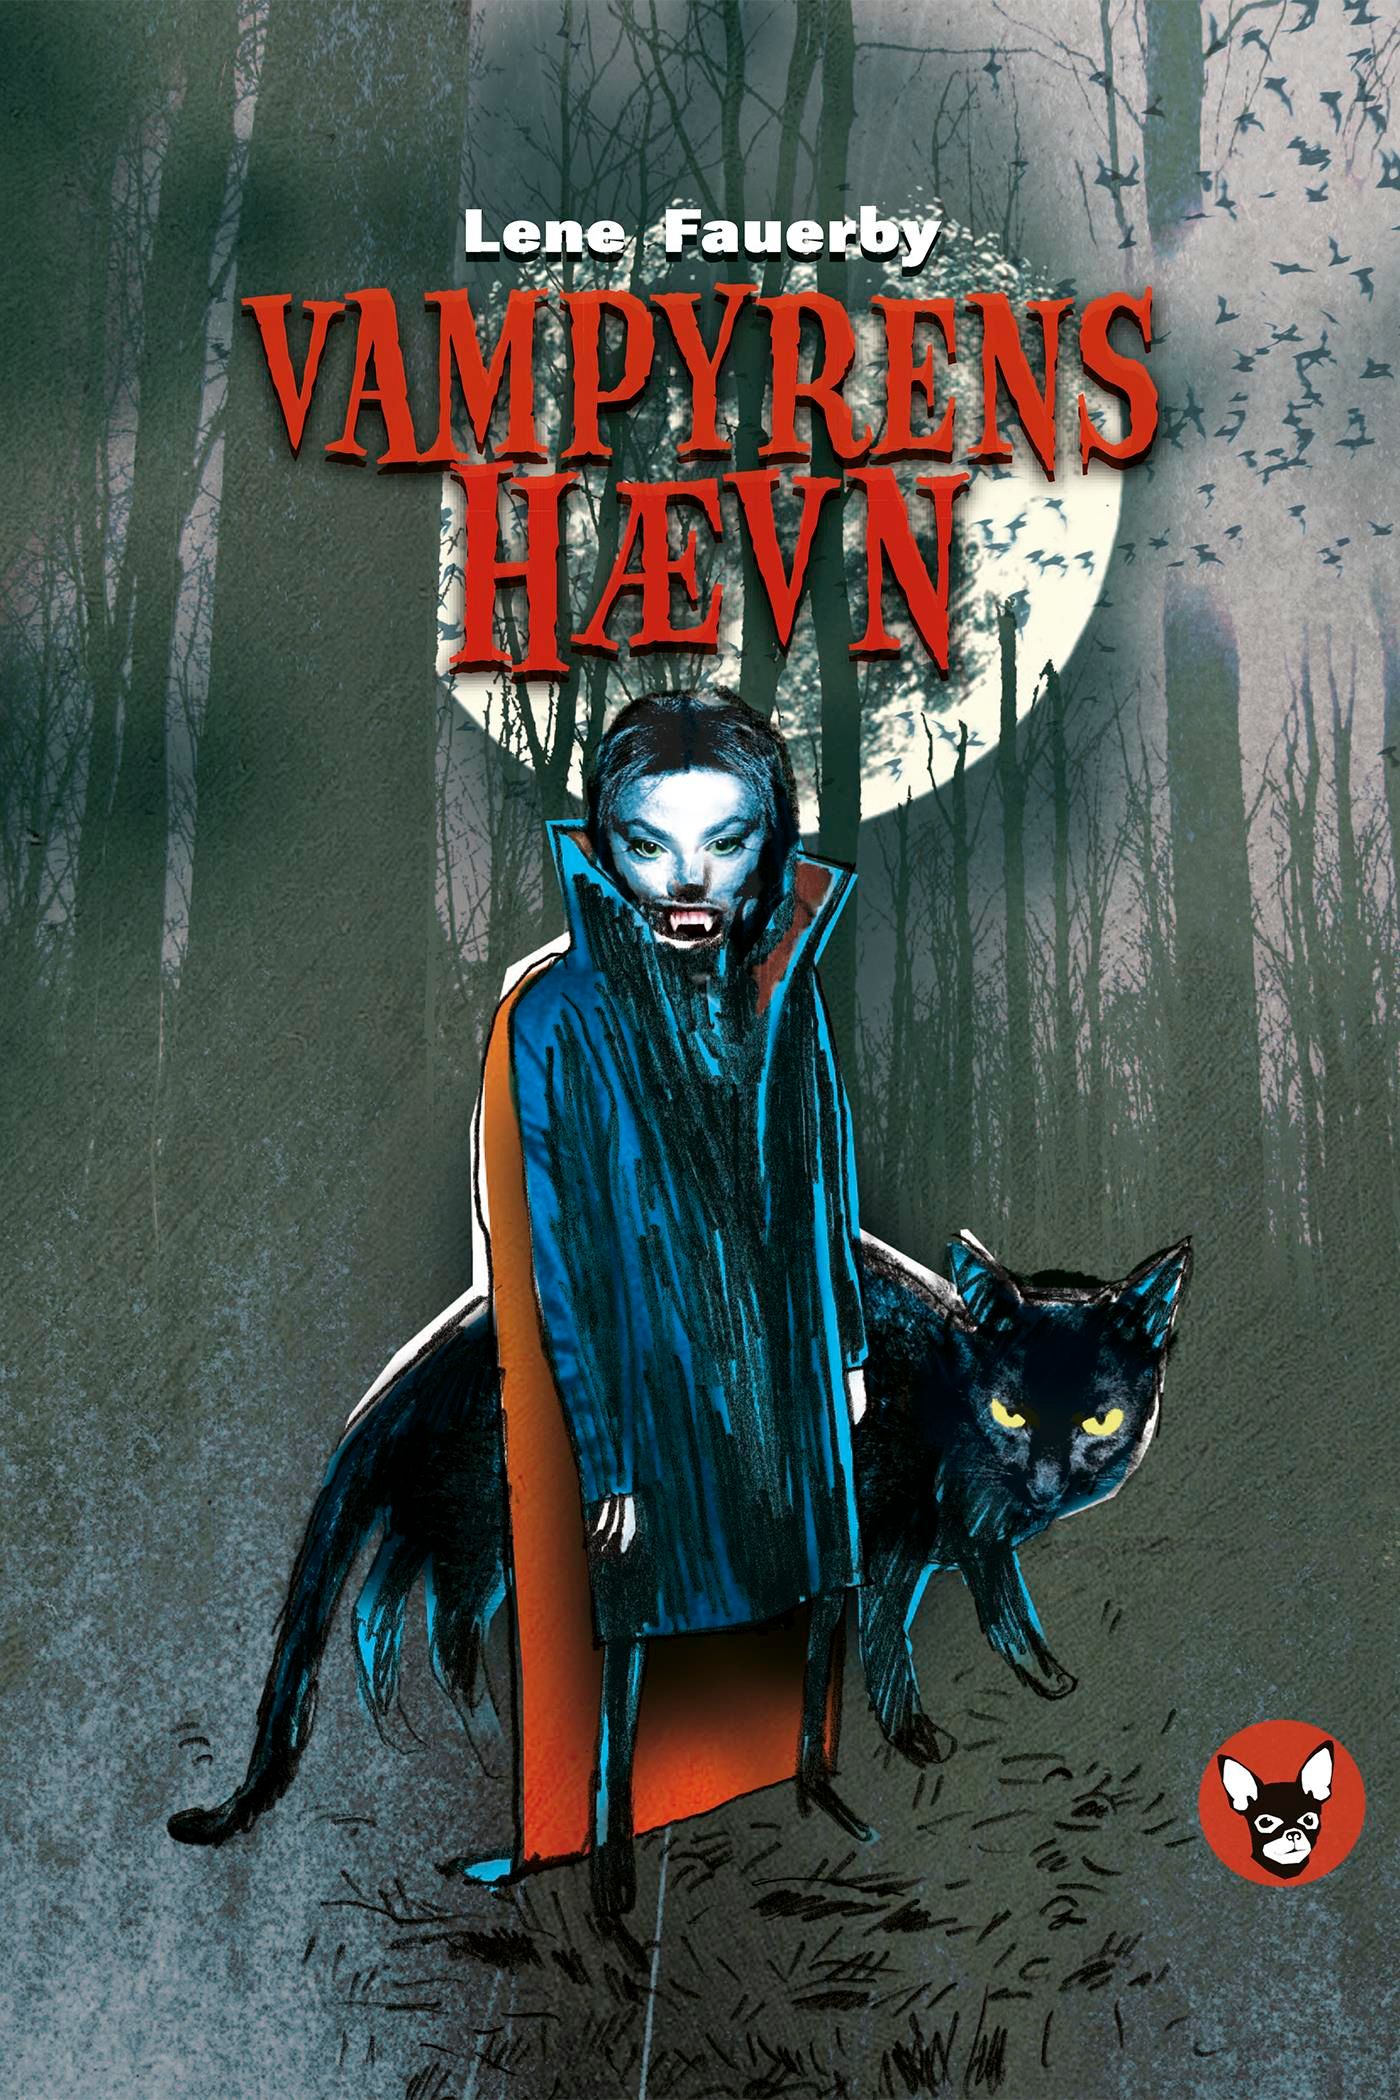 Vampyrens hævn, e-bog af Lene Fauerby